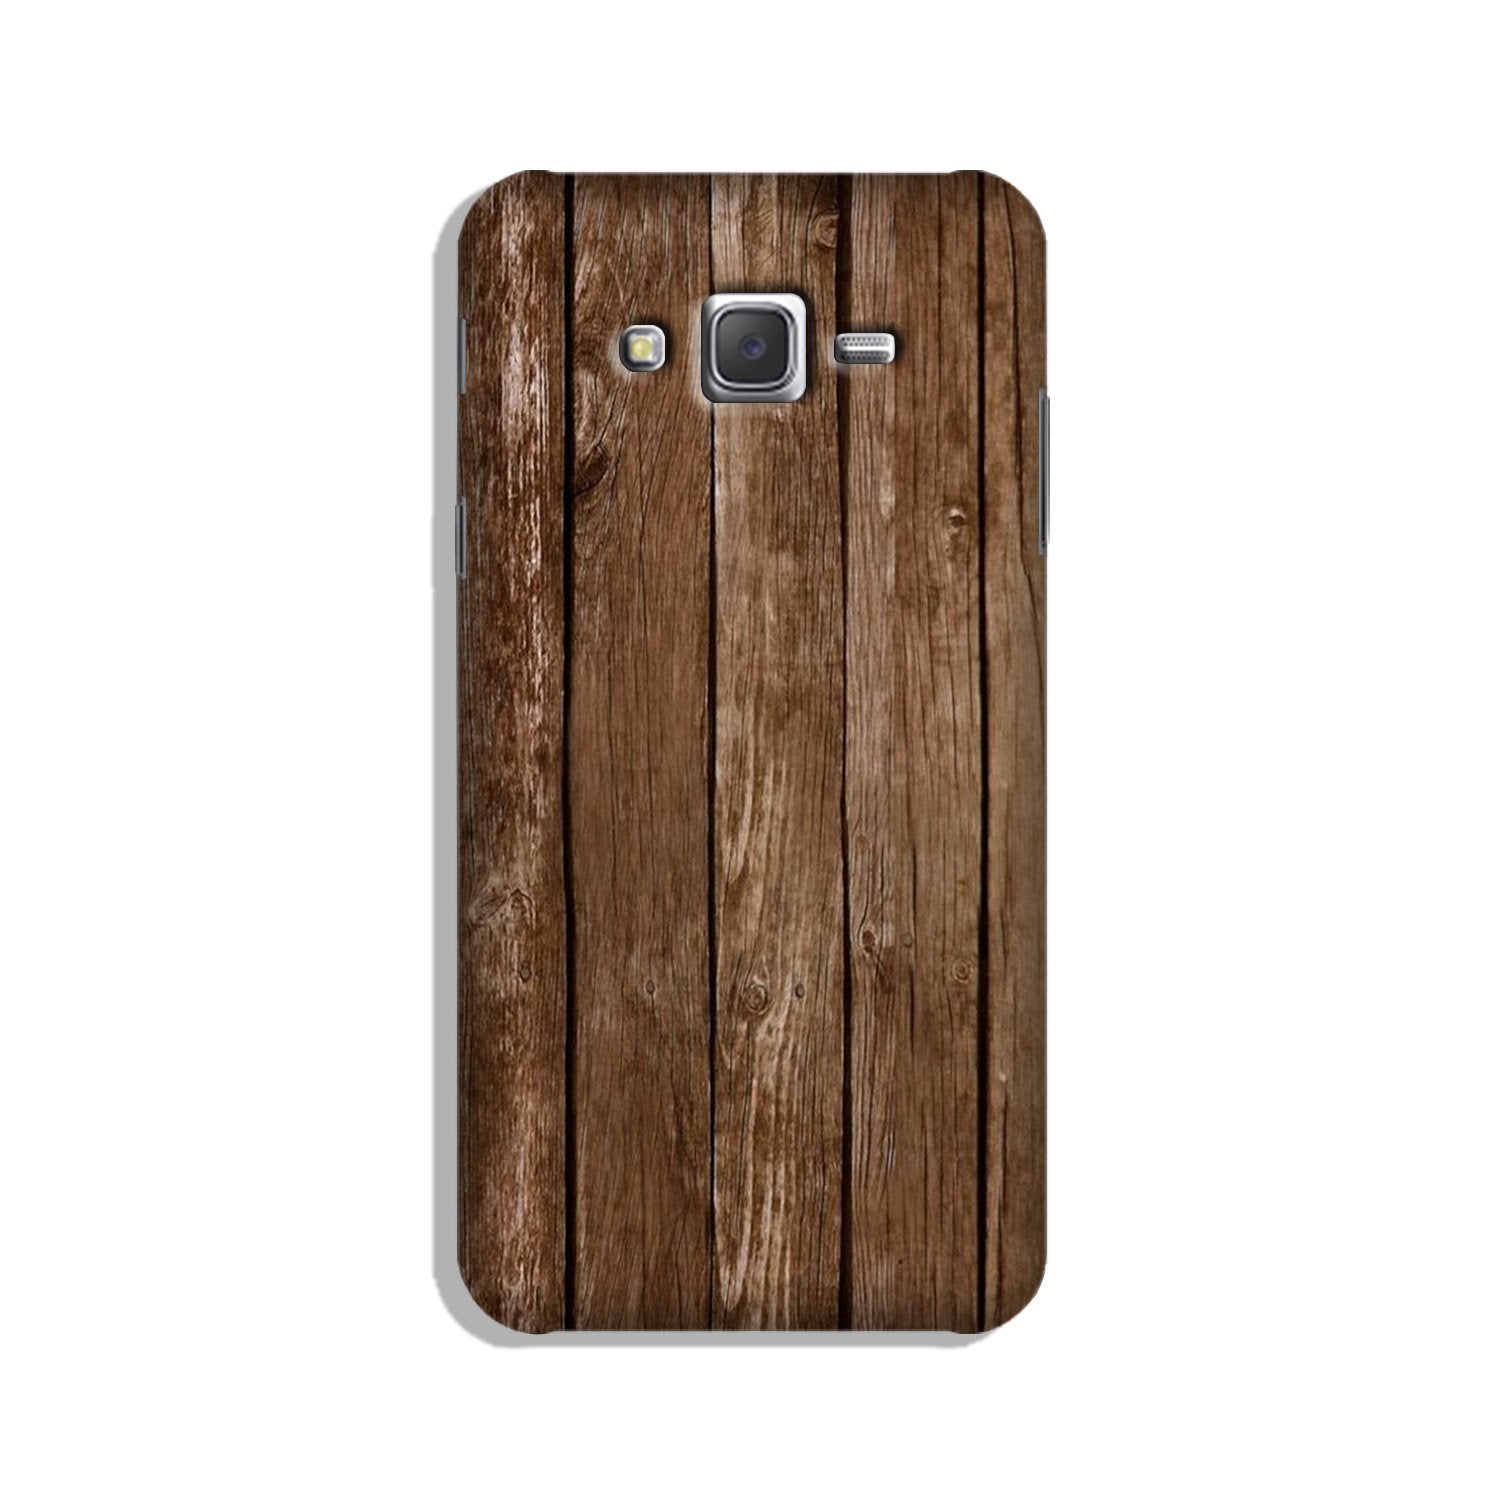 Wooden Look Case for Galaxy E7  (Design - 112)